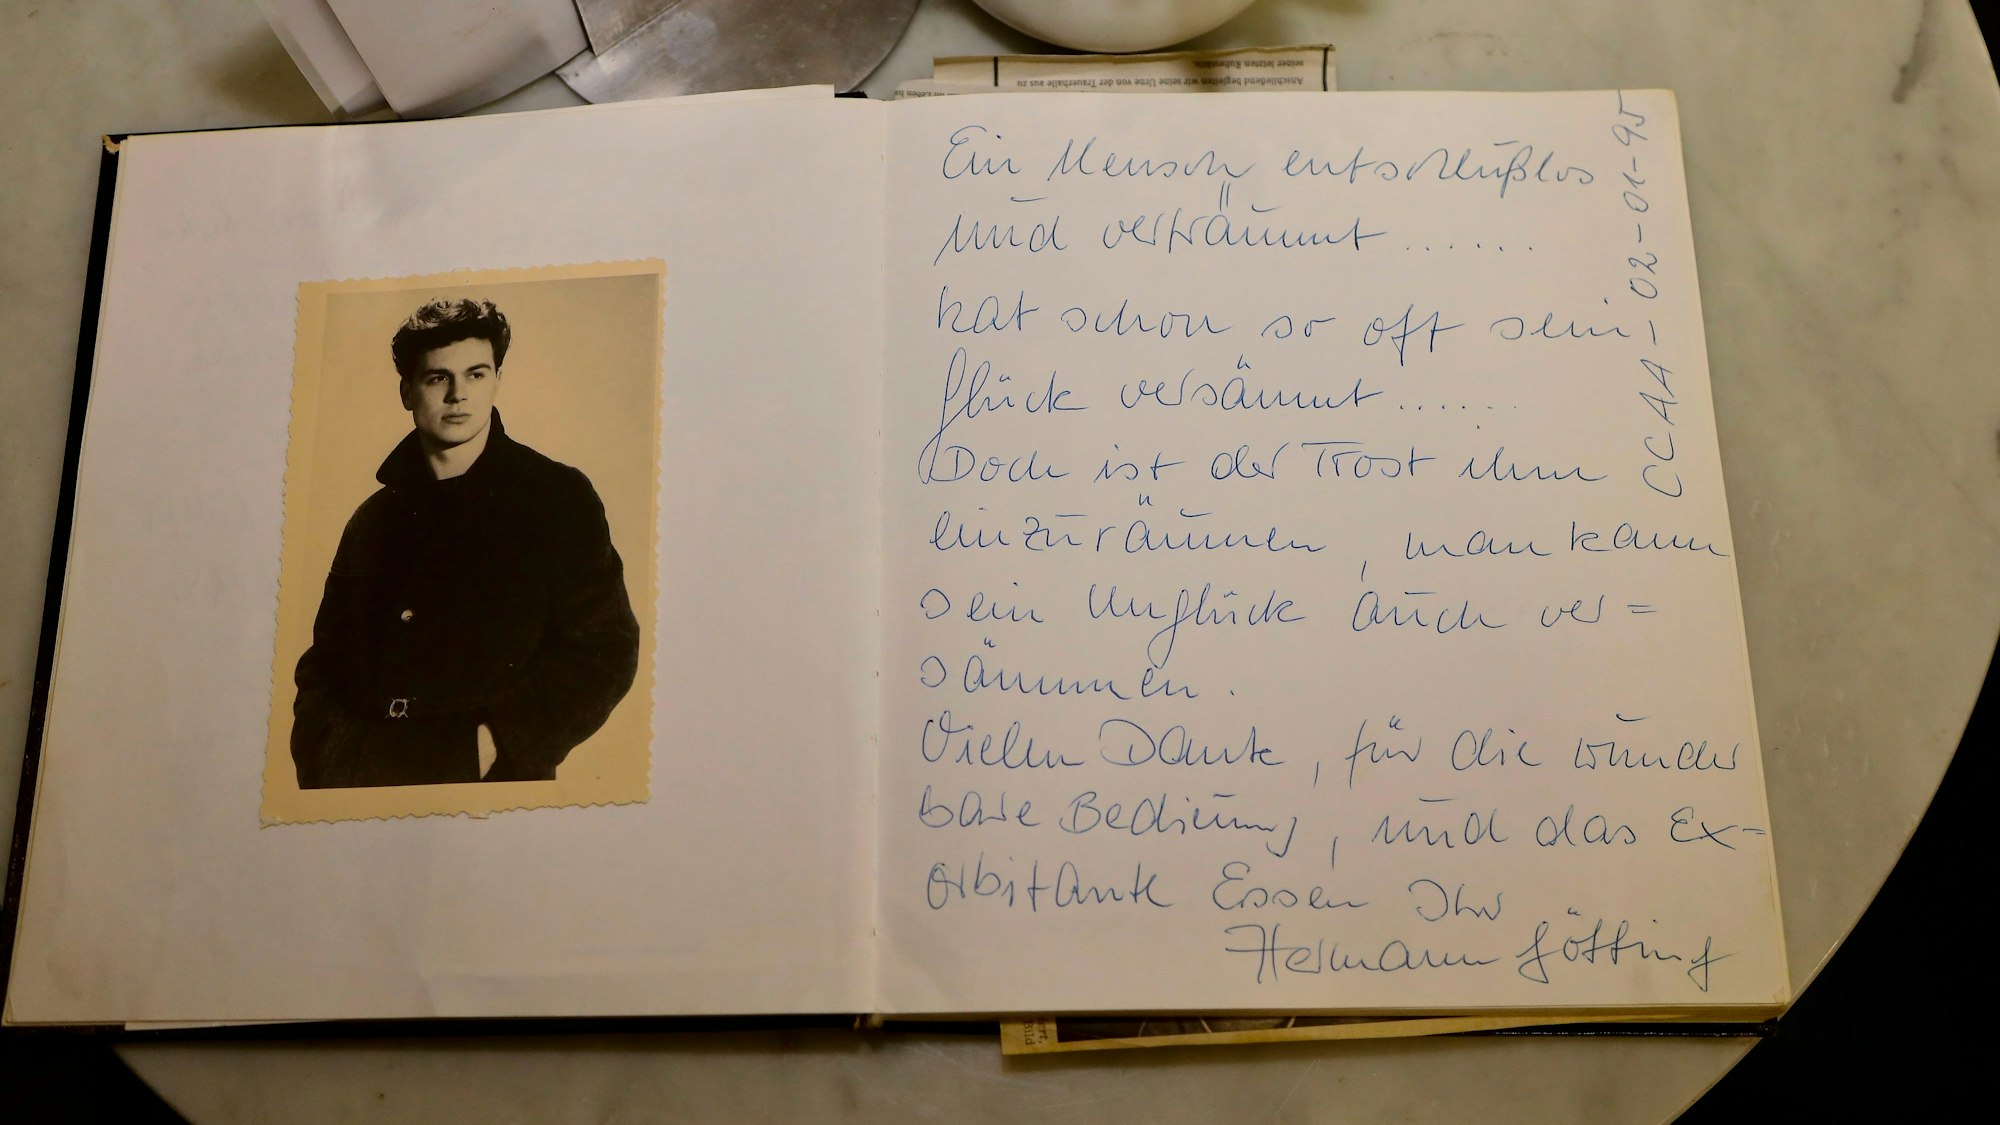 Bild von Hermann Götting klebt neben einer Widmung in einem Gästebuch.